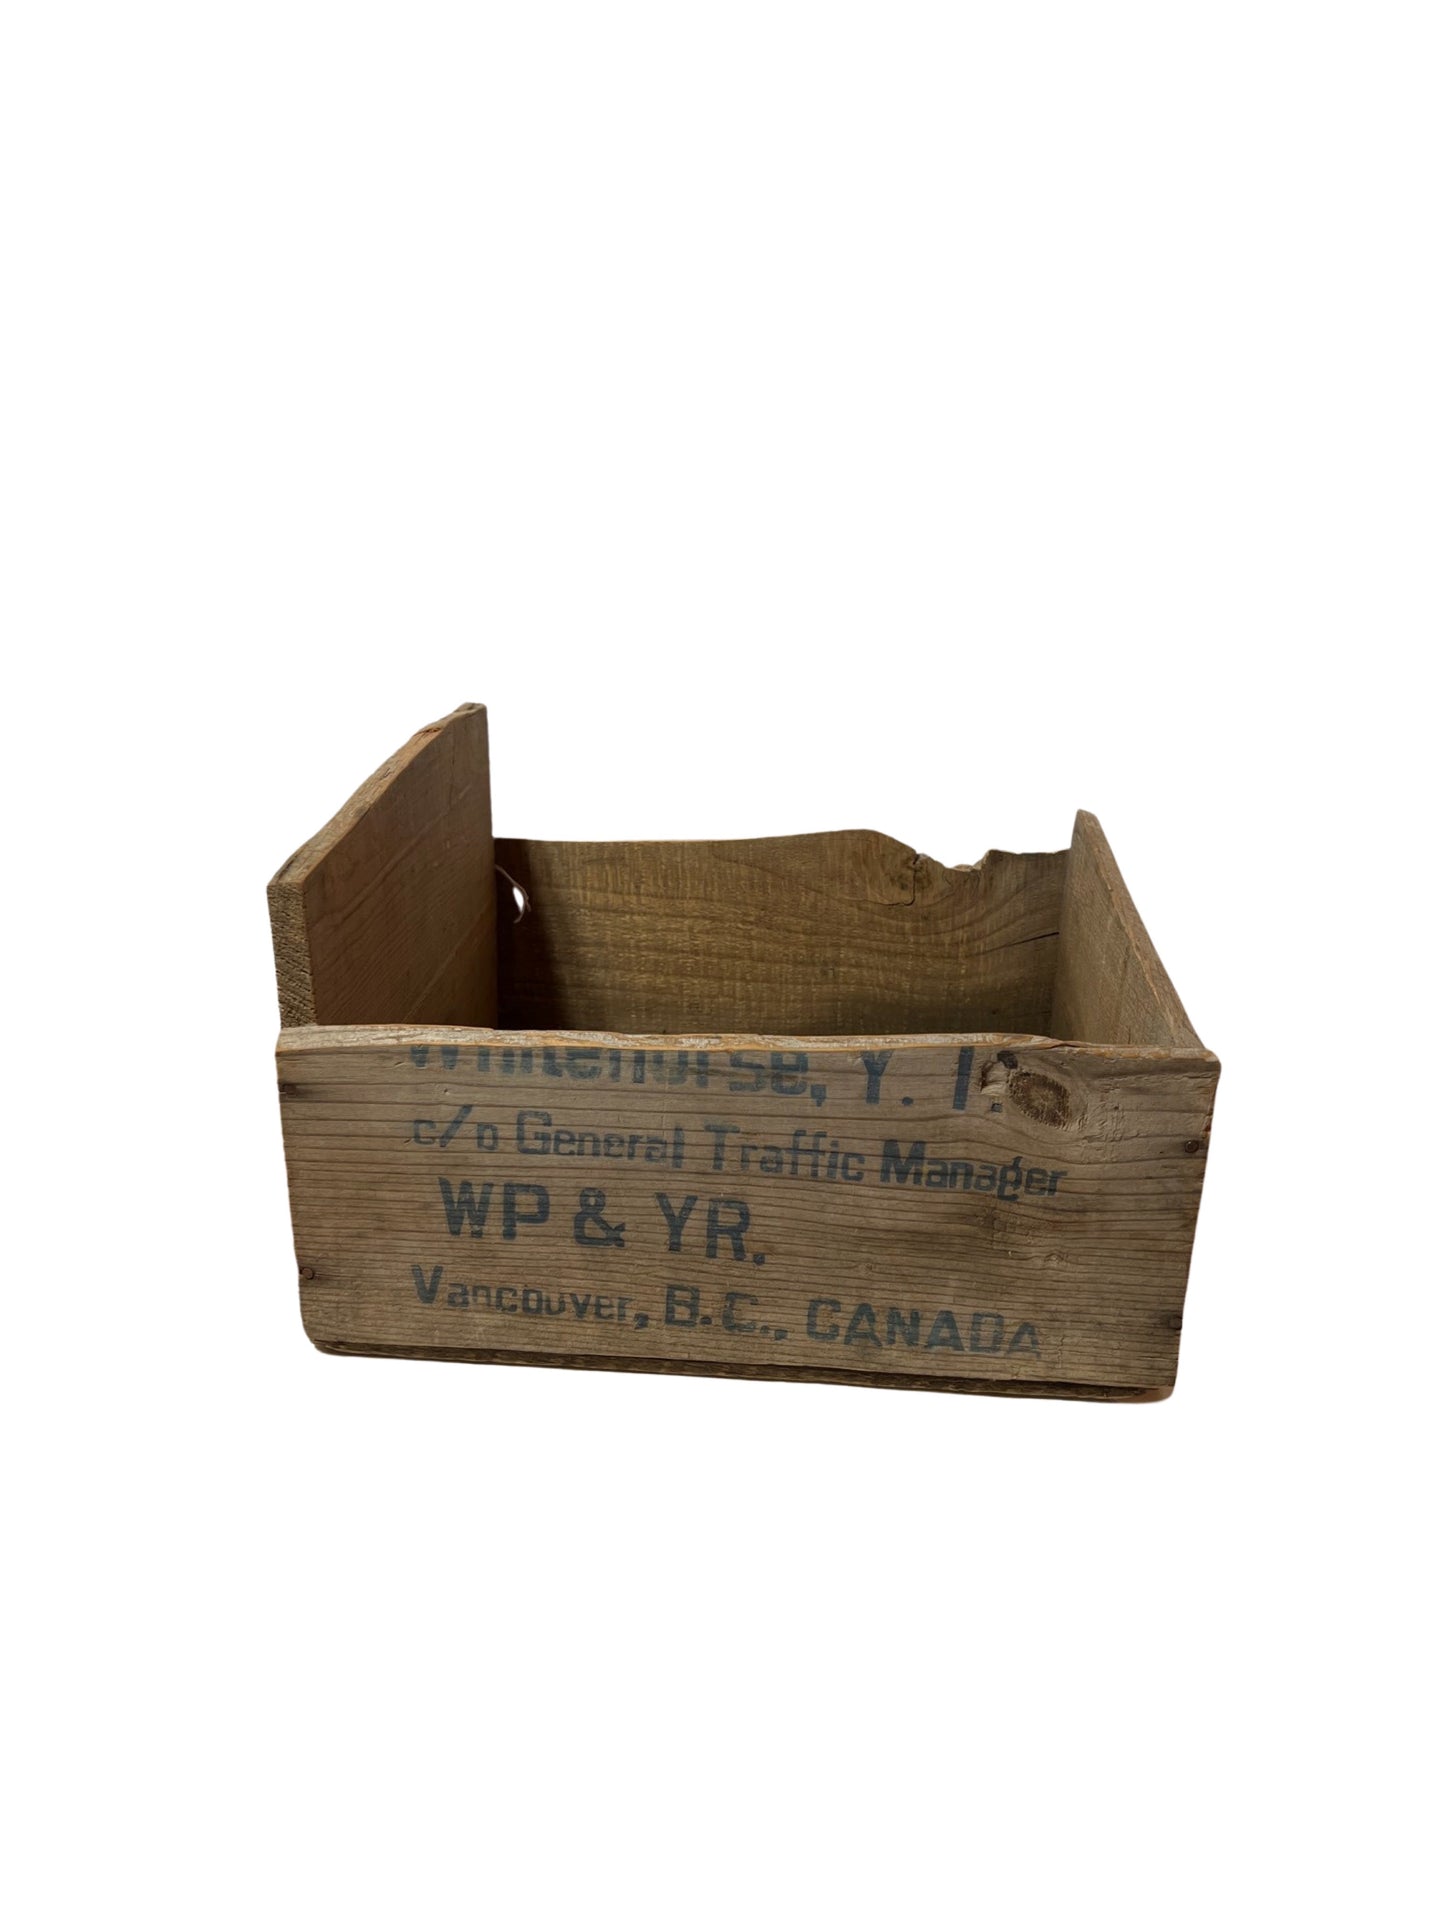 Vintage WP&YR Crate